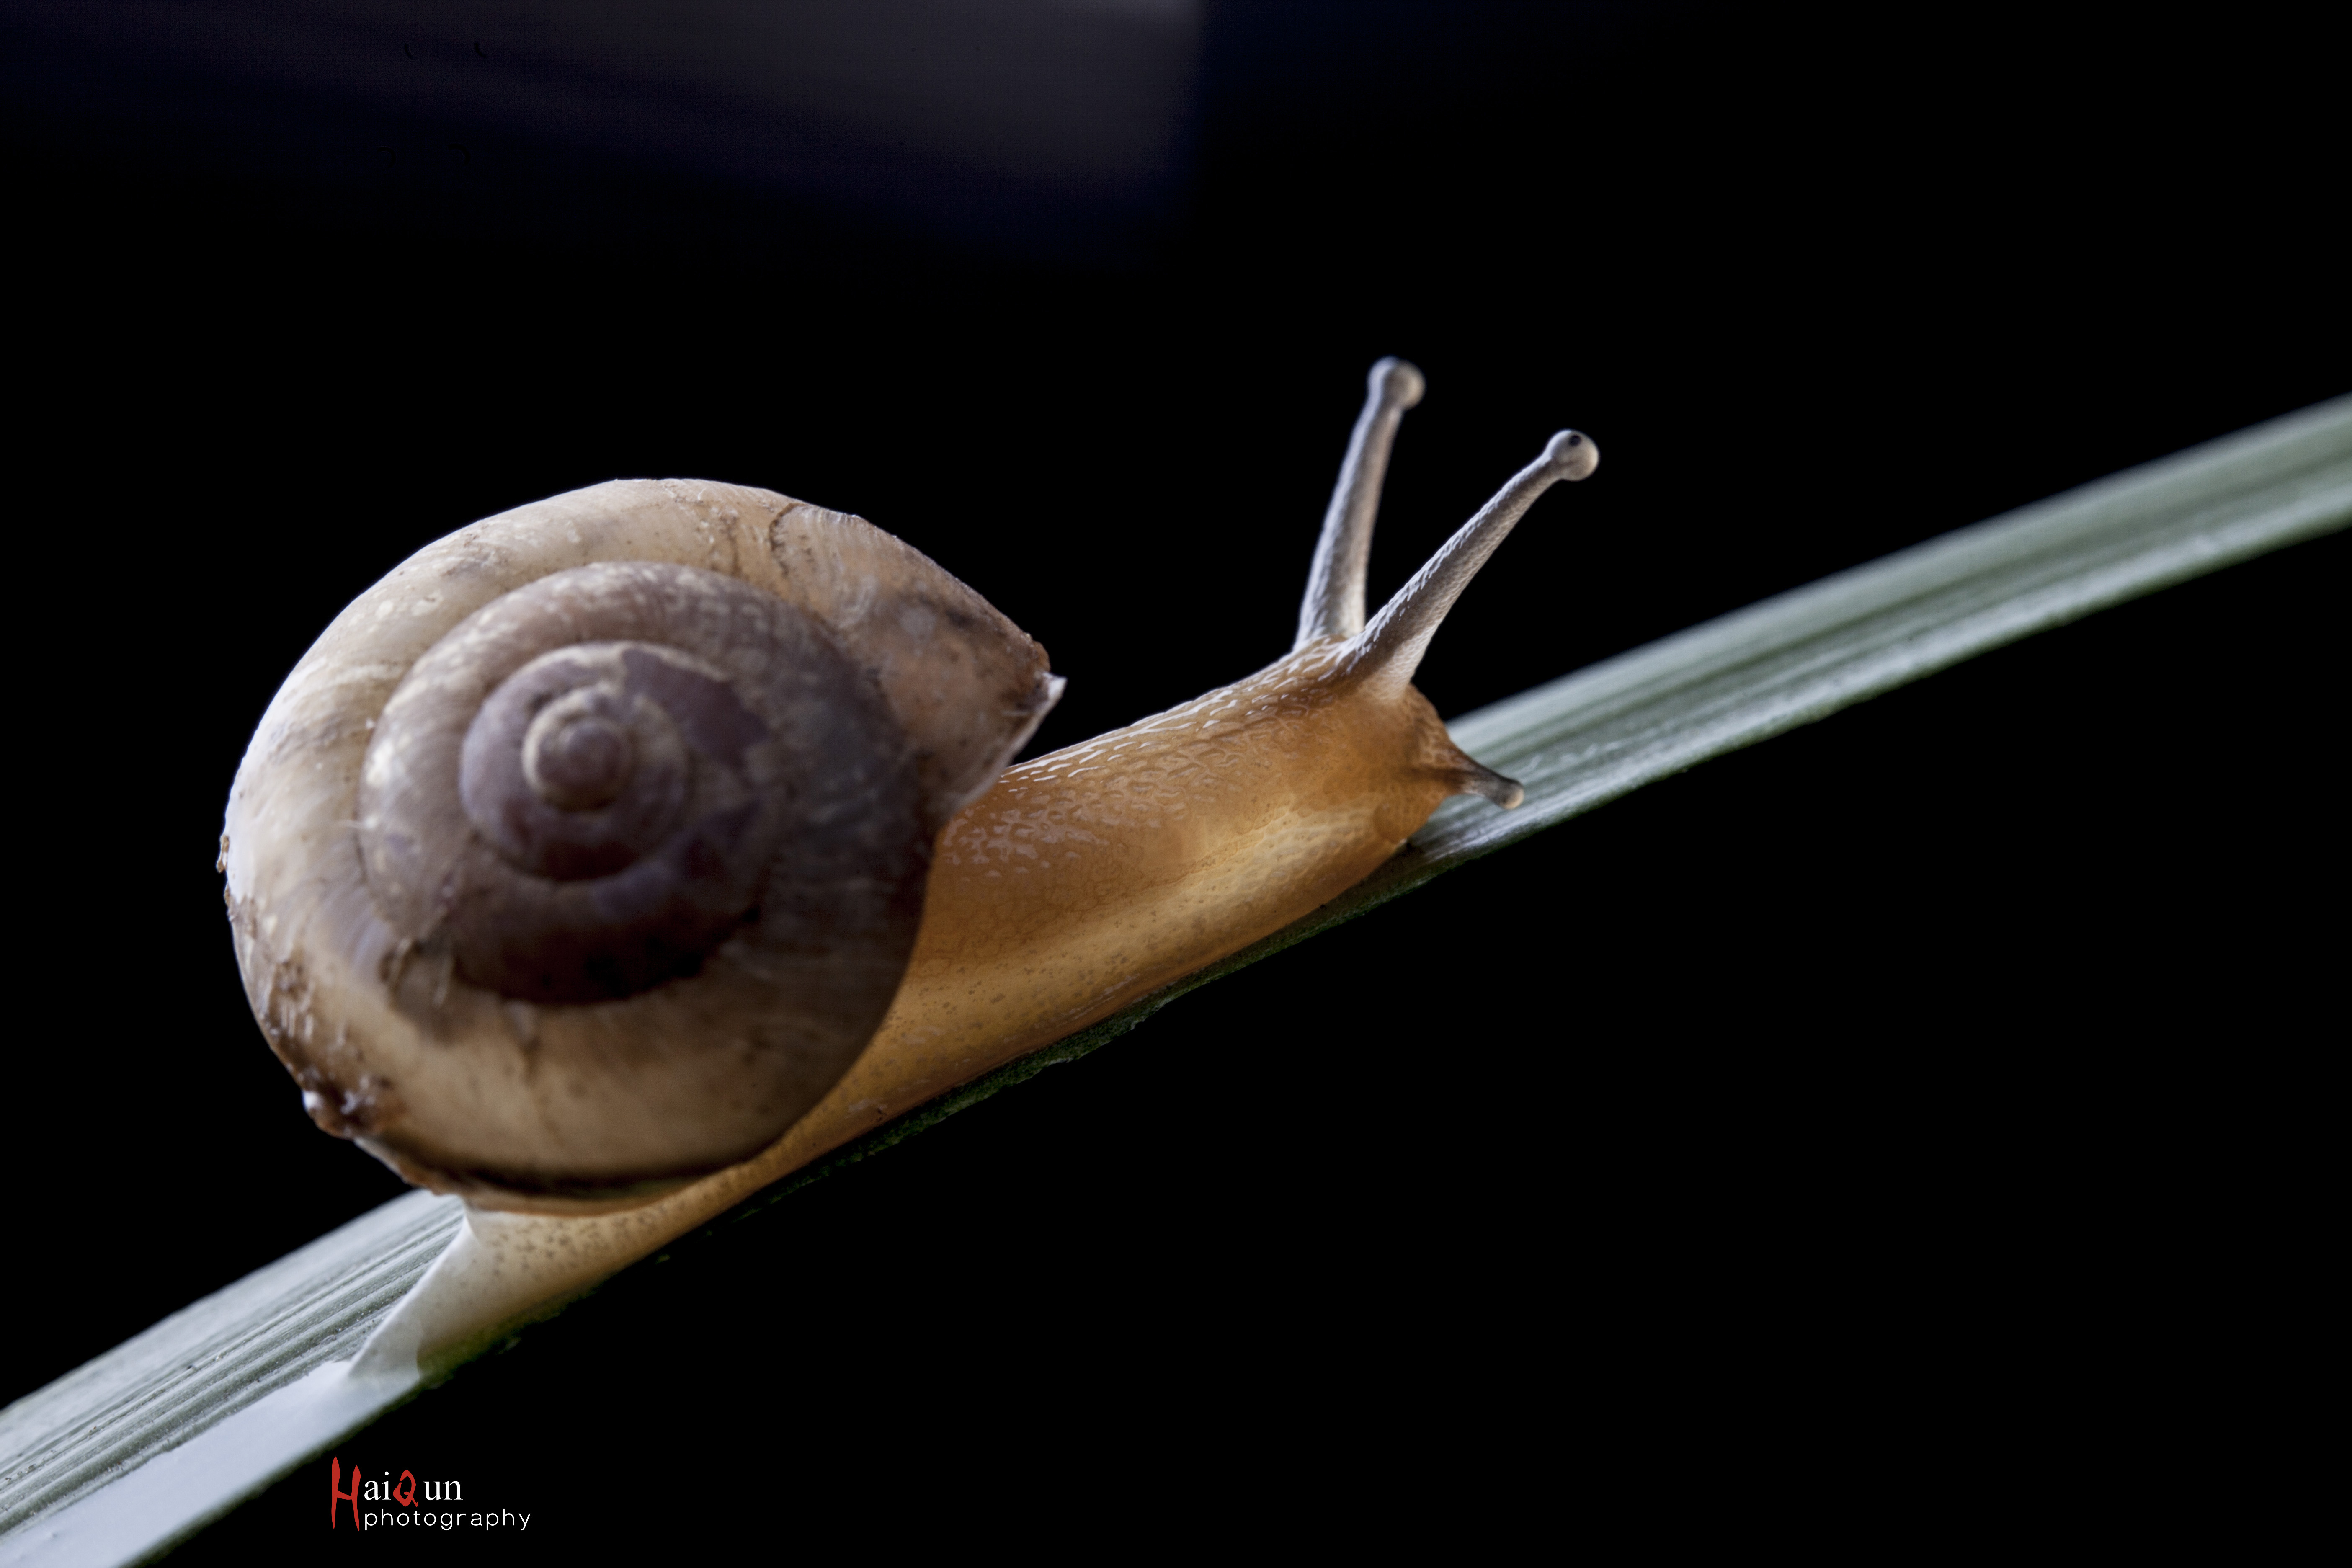 蜗牛壳是左旋的,科学家会给壳体的旋向下定义